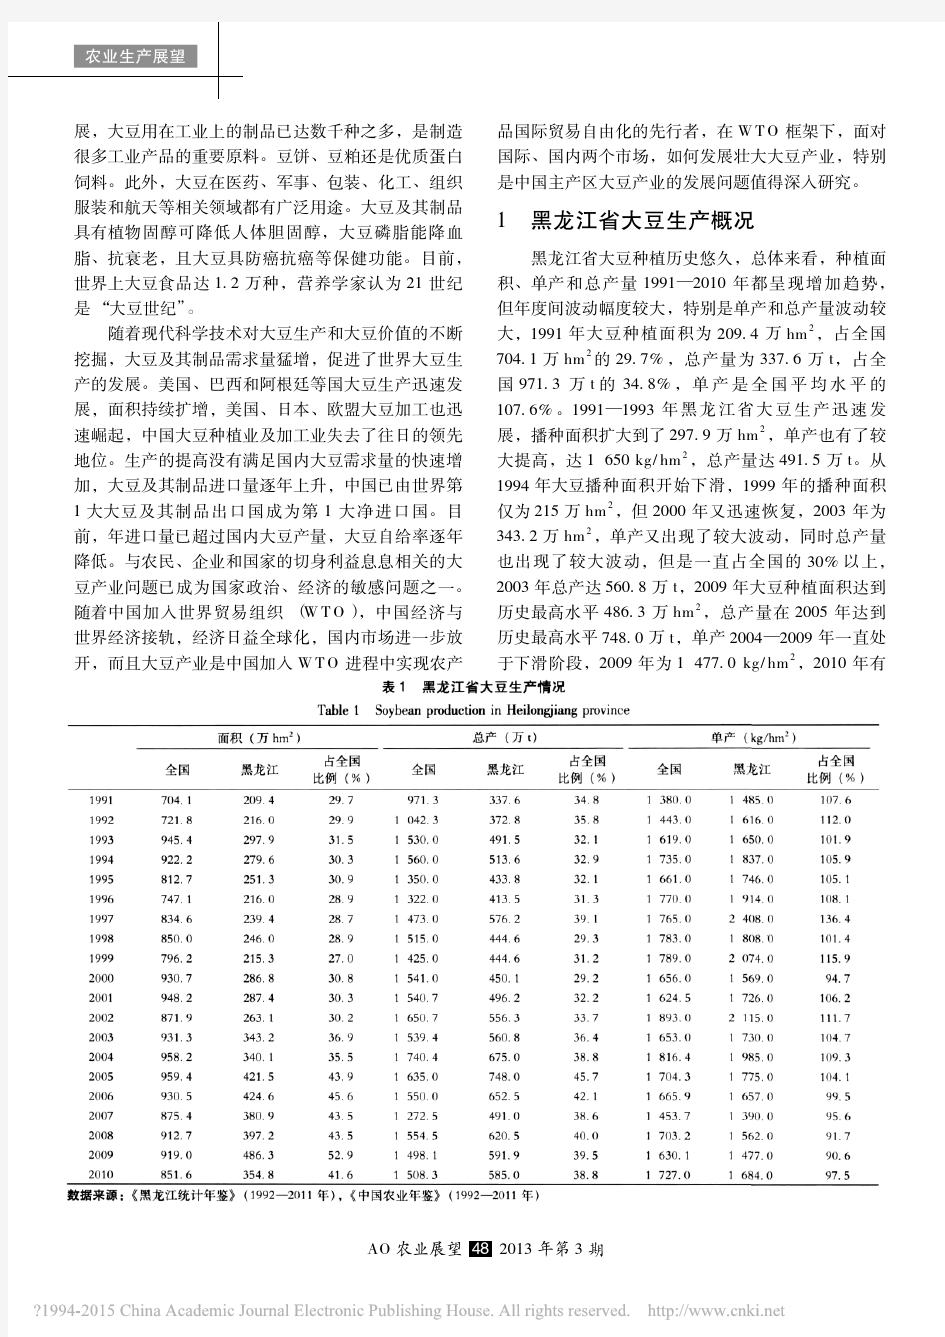 黑龙江省大豆生产优势分析及展望